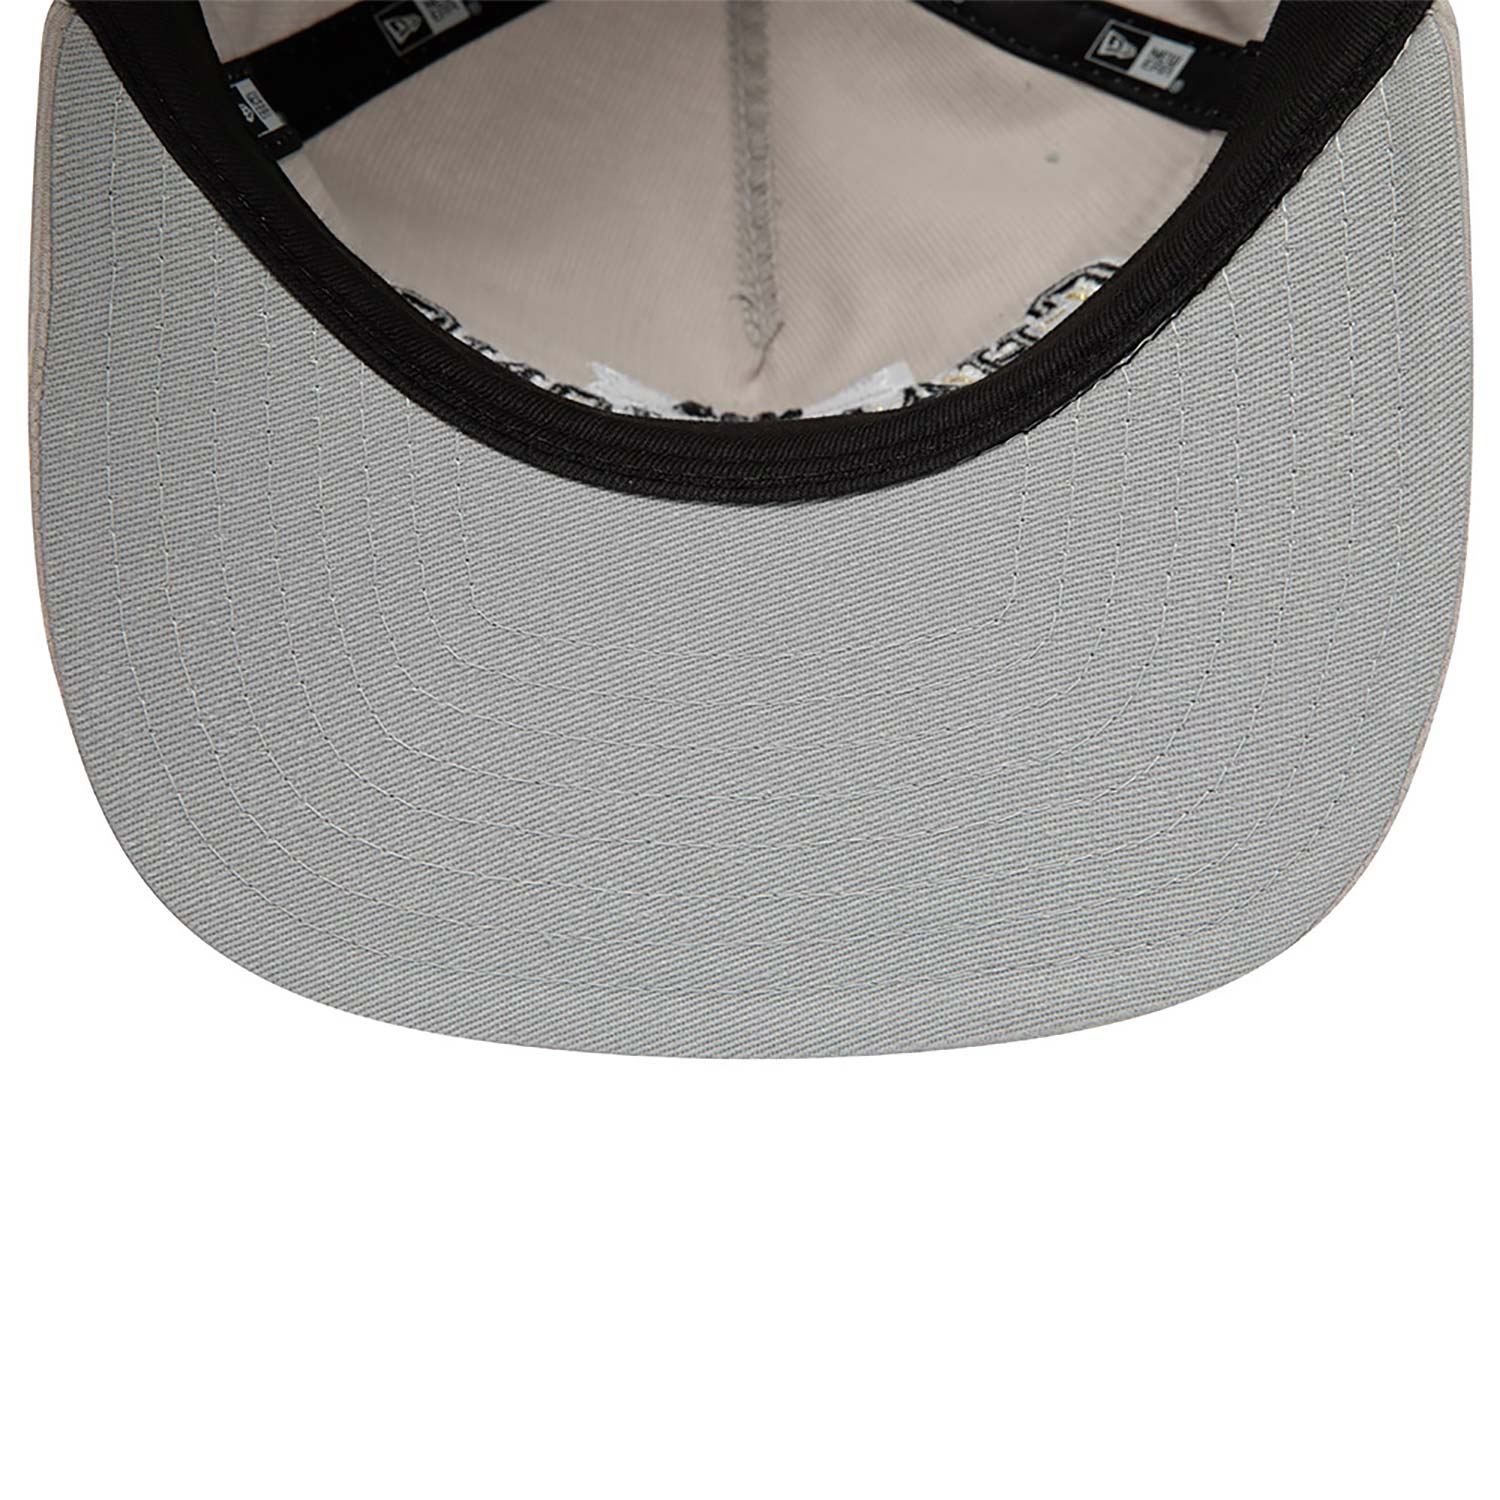 Las Vegas Raiders League Champions Grey Golfer Snapback Cap